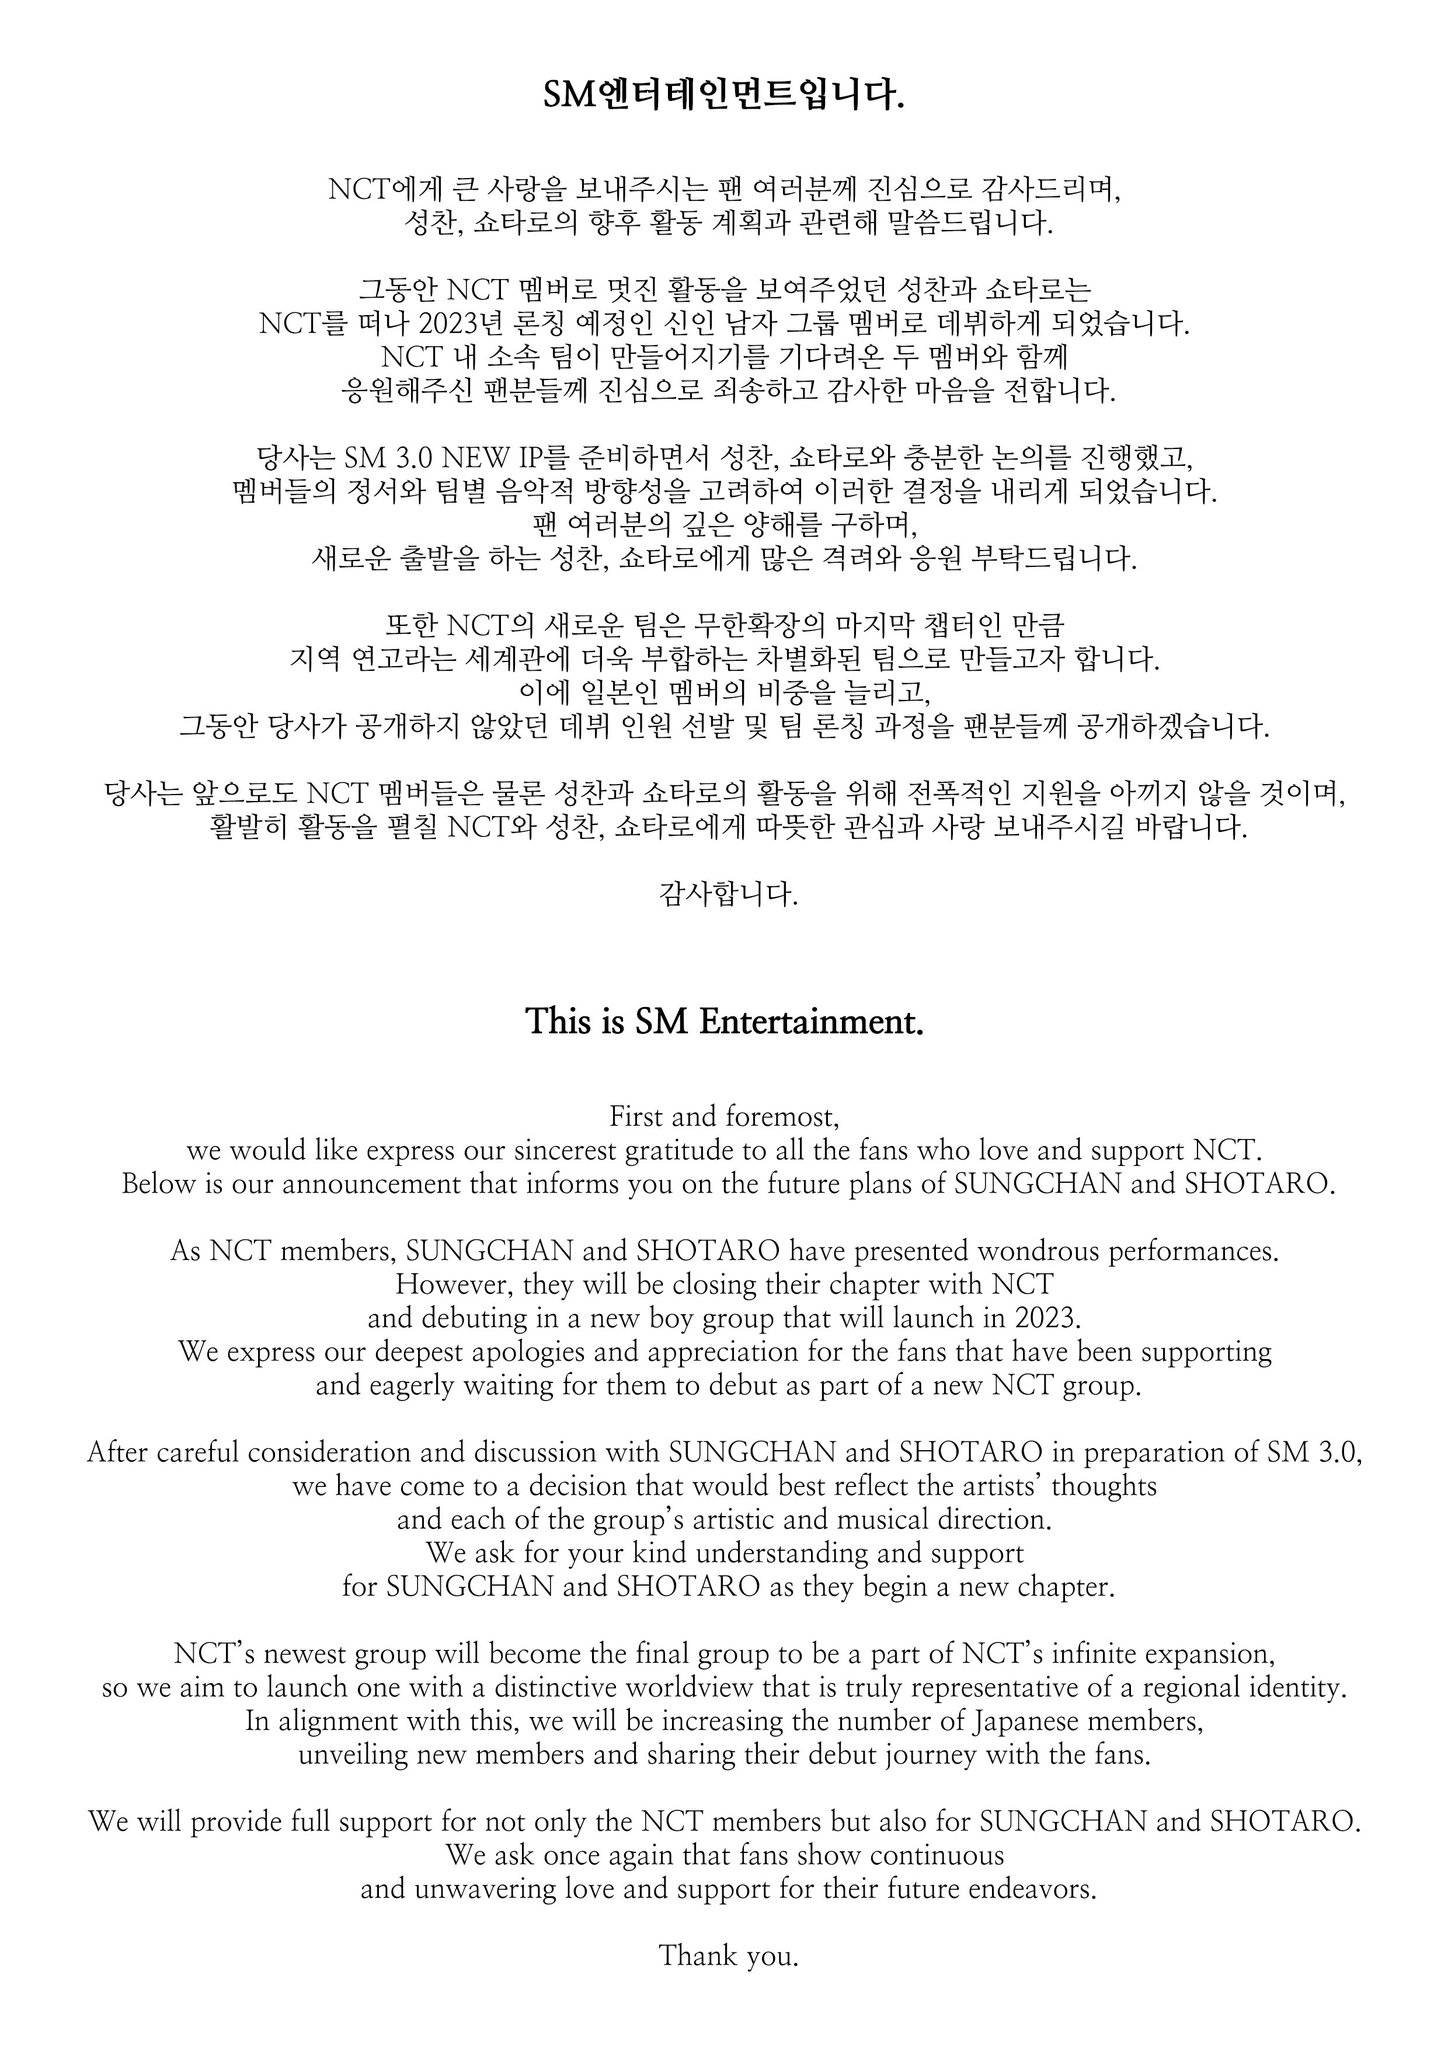 NCT를 떠나서 신인그룹으로 데뷔한다는 성찬, 쇼타로 | 인스티즈